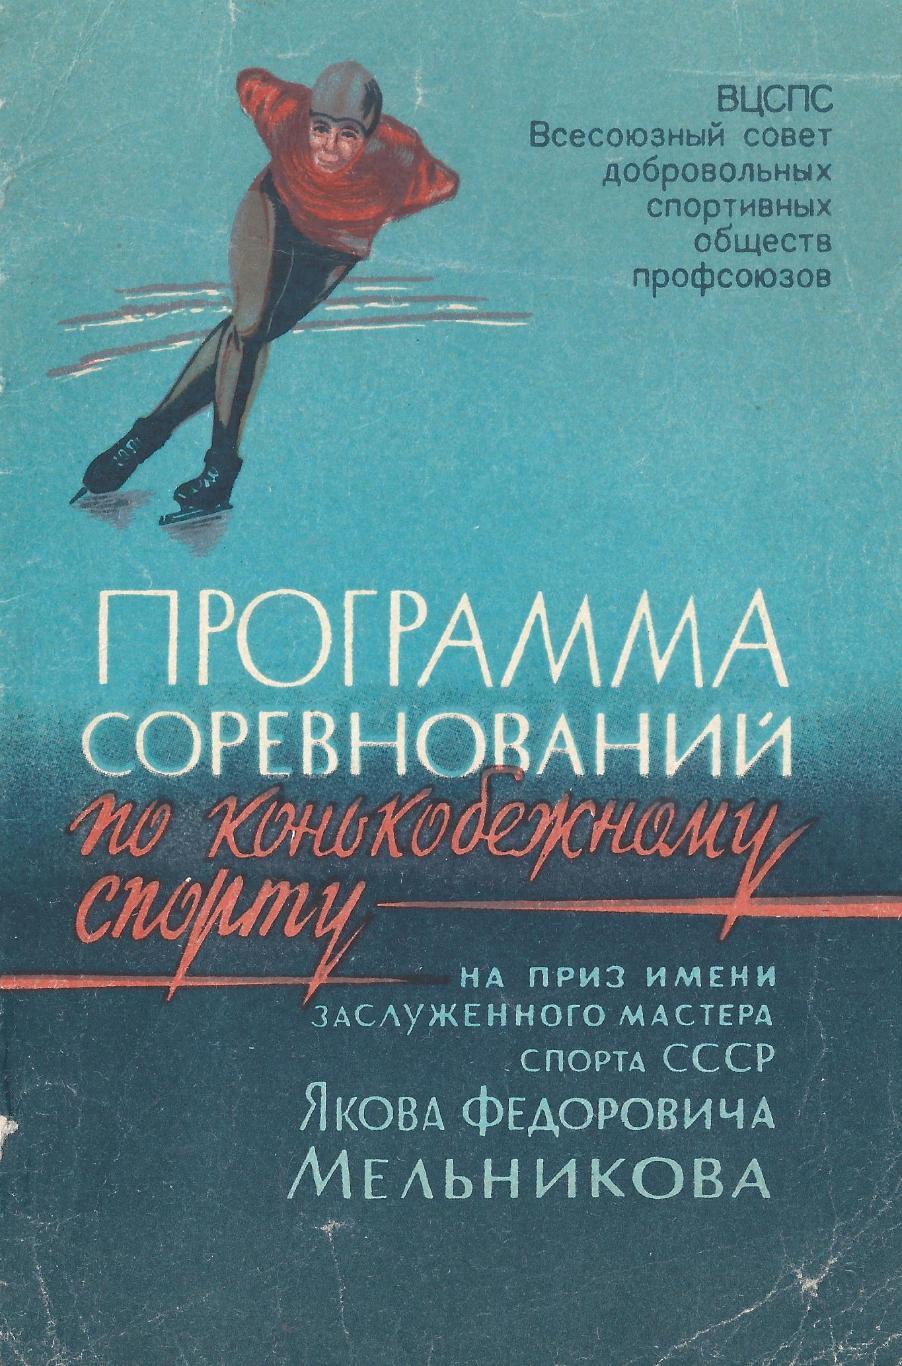 1967 - Соревнования по конькобежному спорту на приз Мельникова